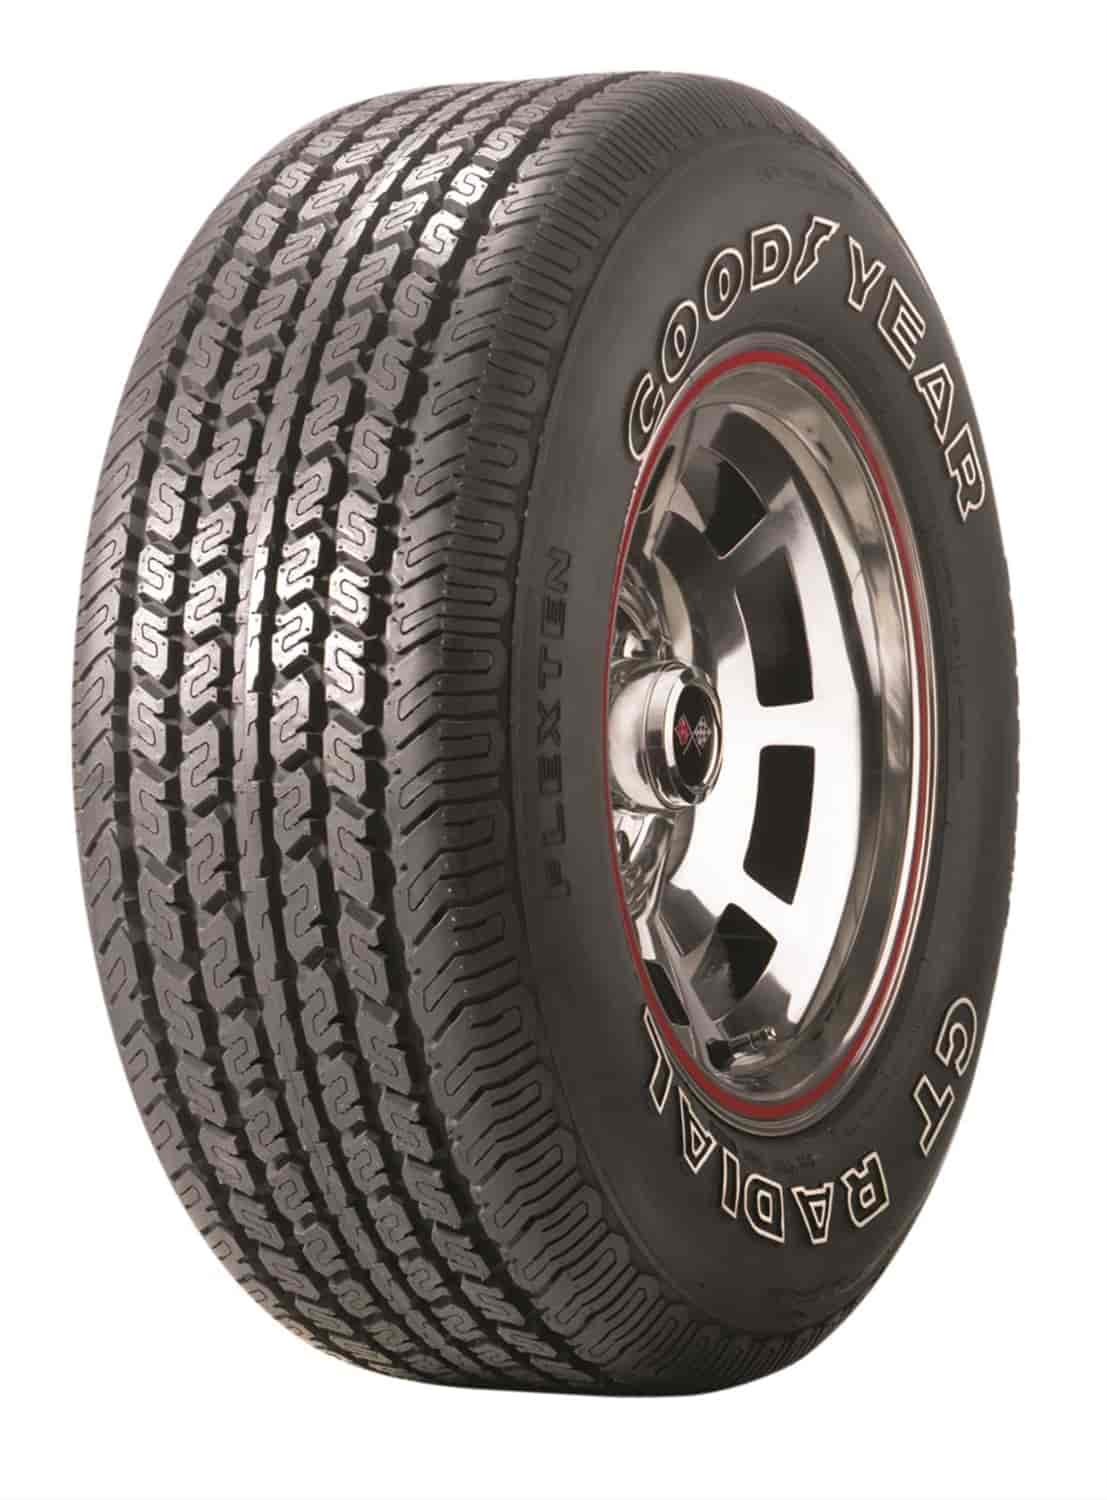 Goodyear Collector Series GT Radial Flexten Tire